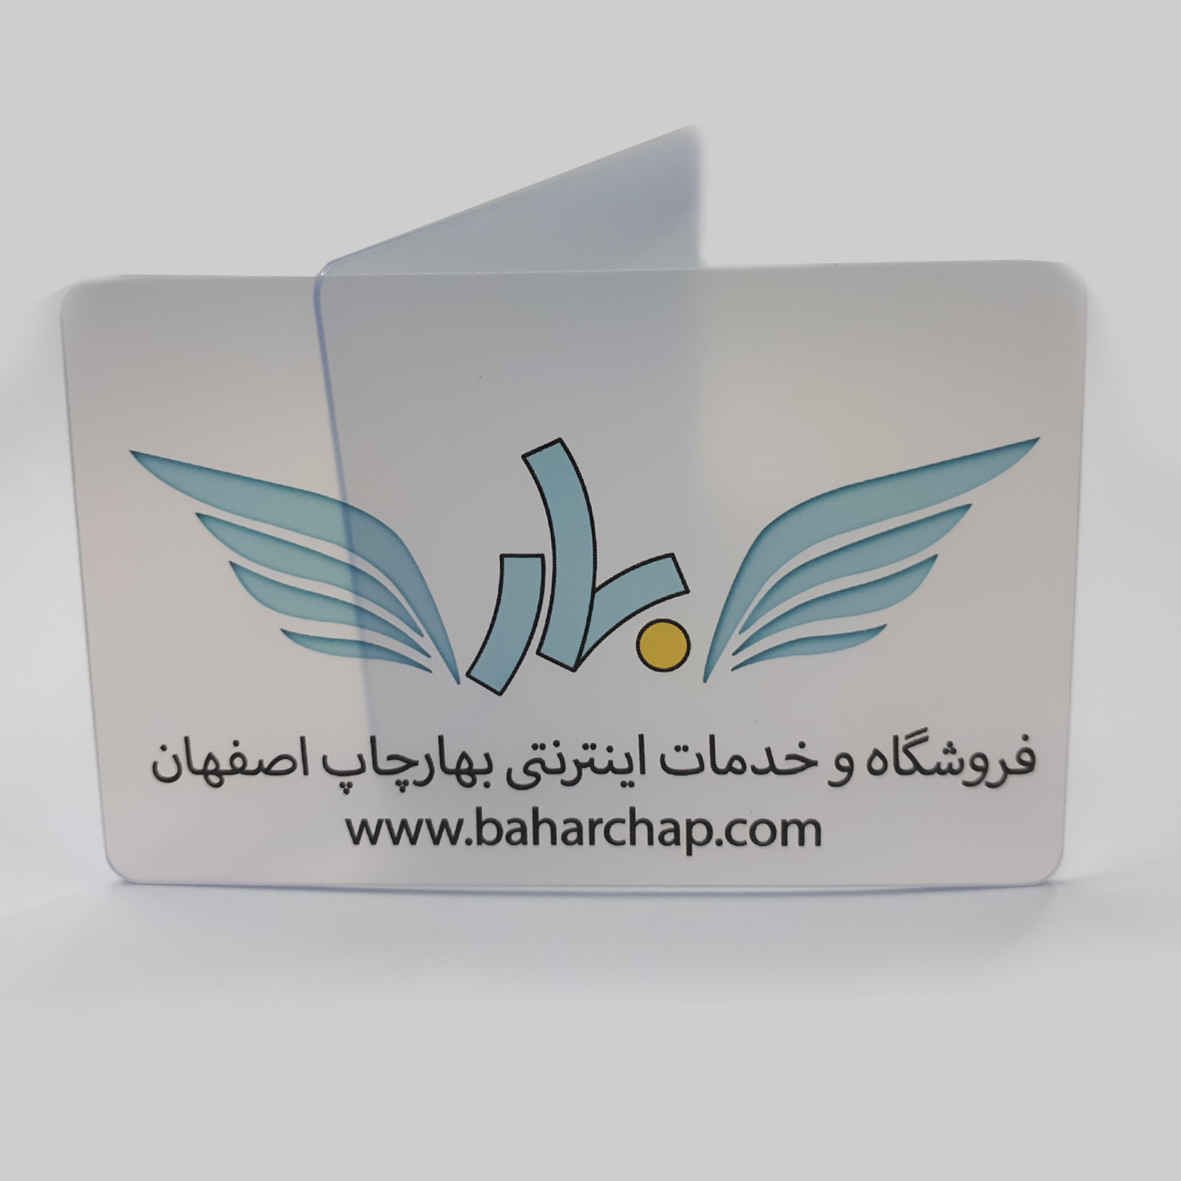 فروشگاه و خدمات اینترنتی بهارچاپ اصفهان-کارت خام PVC جوهر افشان(شفاف) -transparent pvc card inkjet